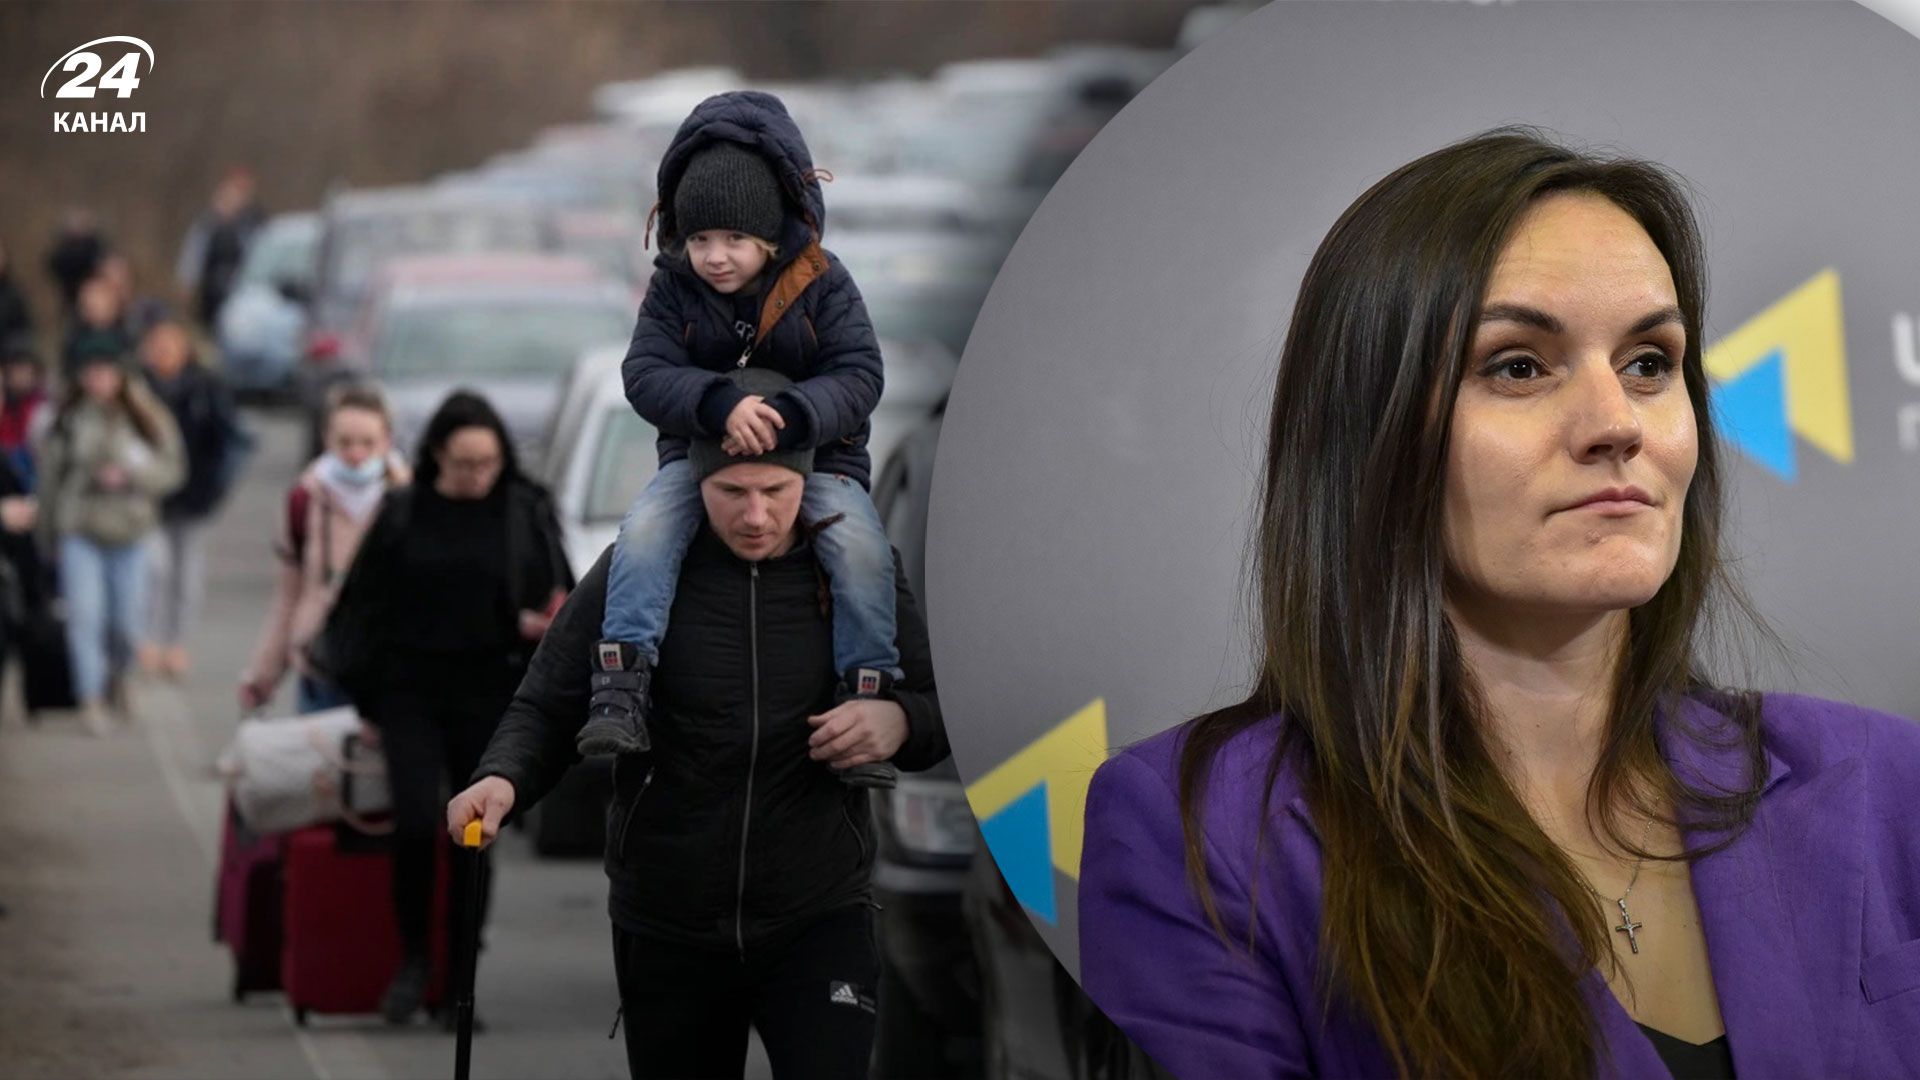 Скільки людей втратив український ринок праці через повномасштабну війну